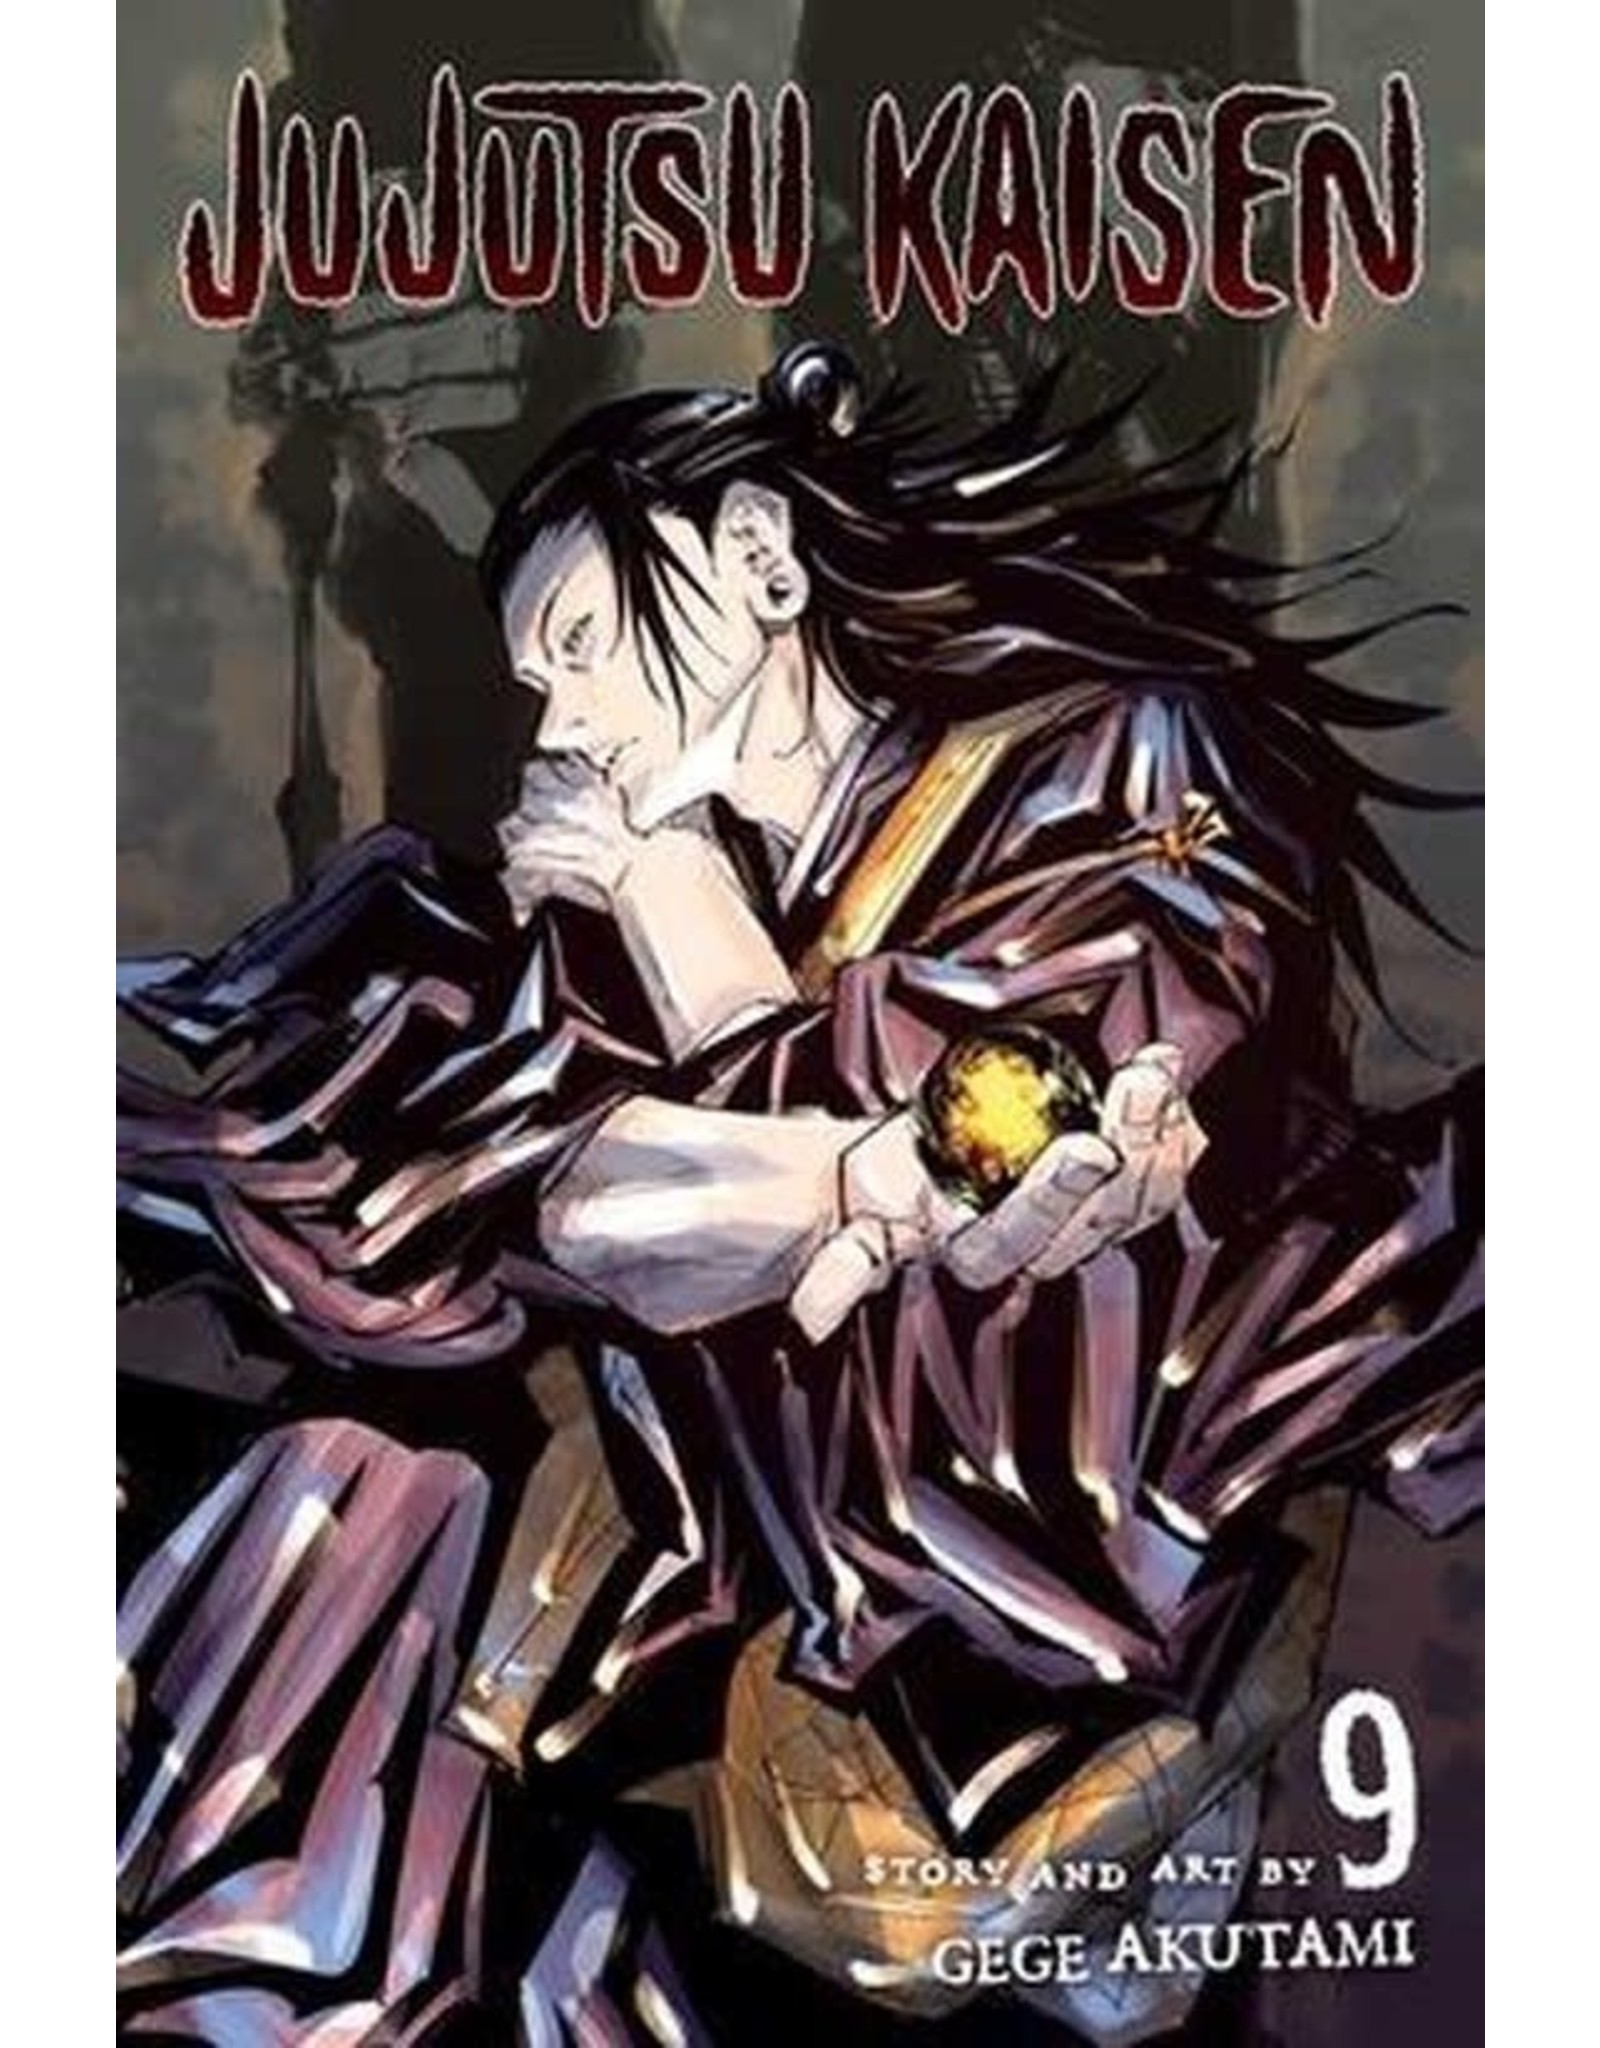 Jujutsu Kaisen 09 (English) - Manga